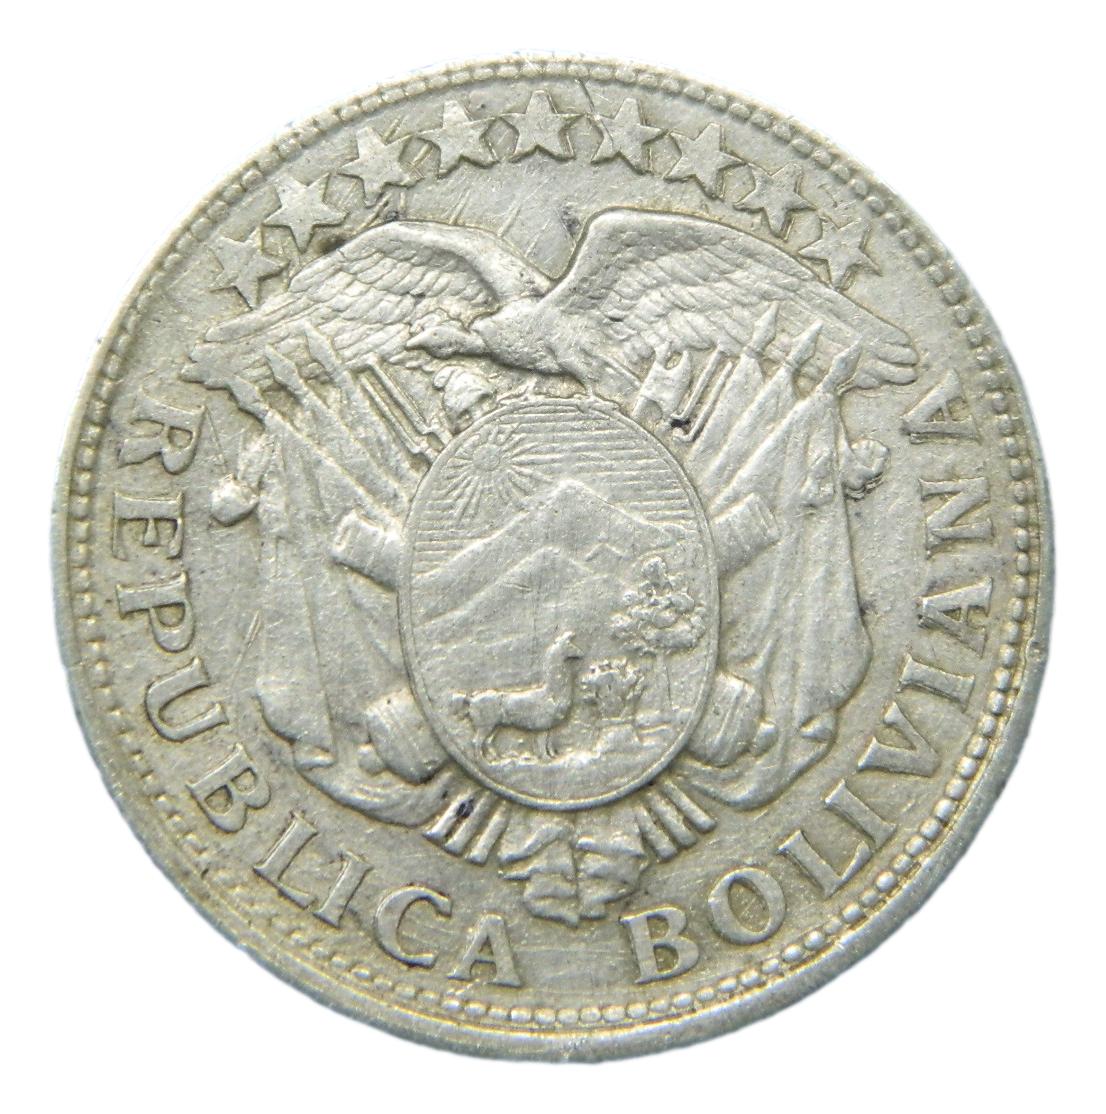 1908 MM - BOLIVIA - 50 CENTAVOS - KM 175.1